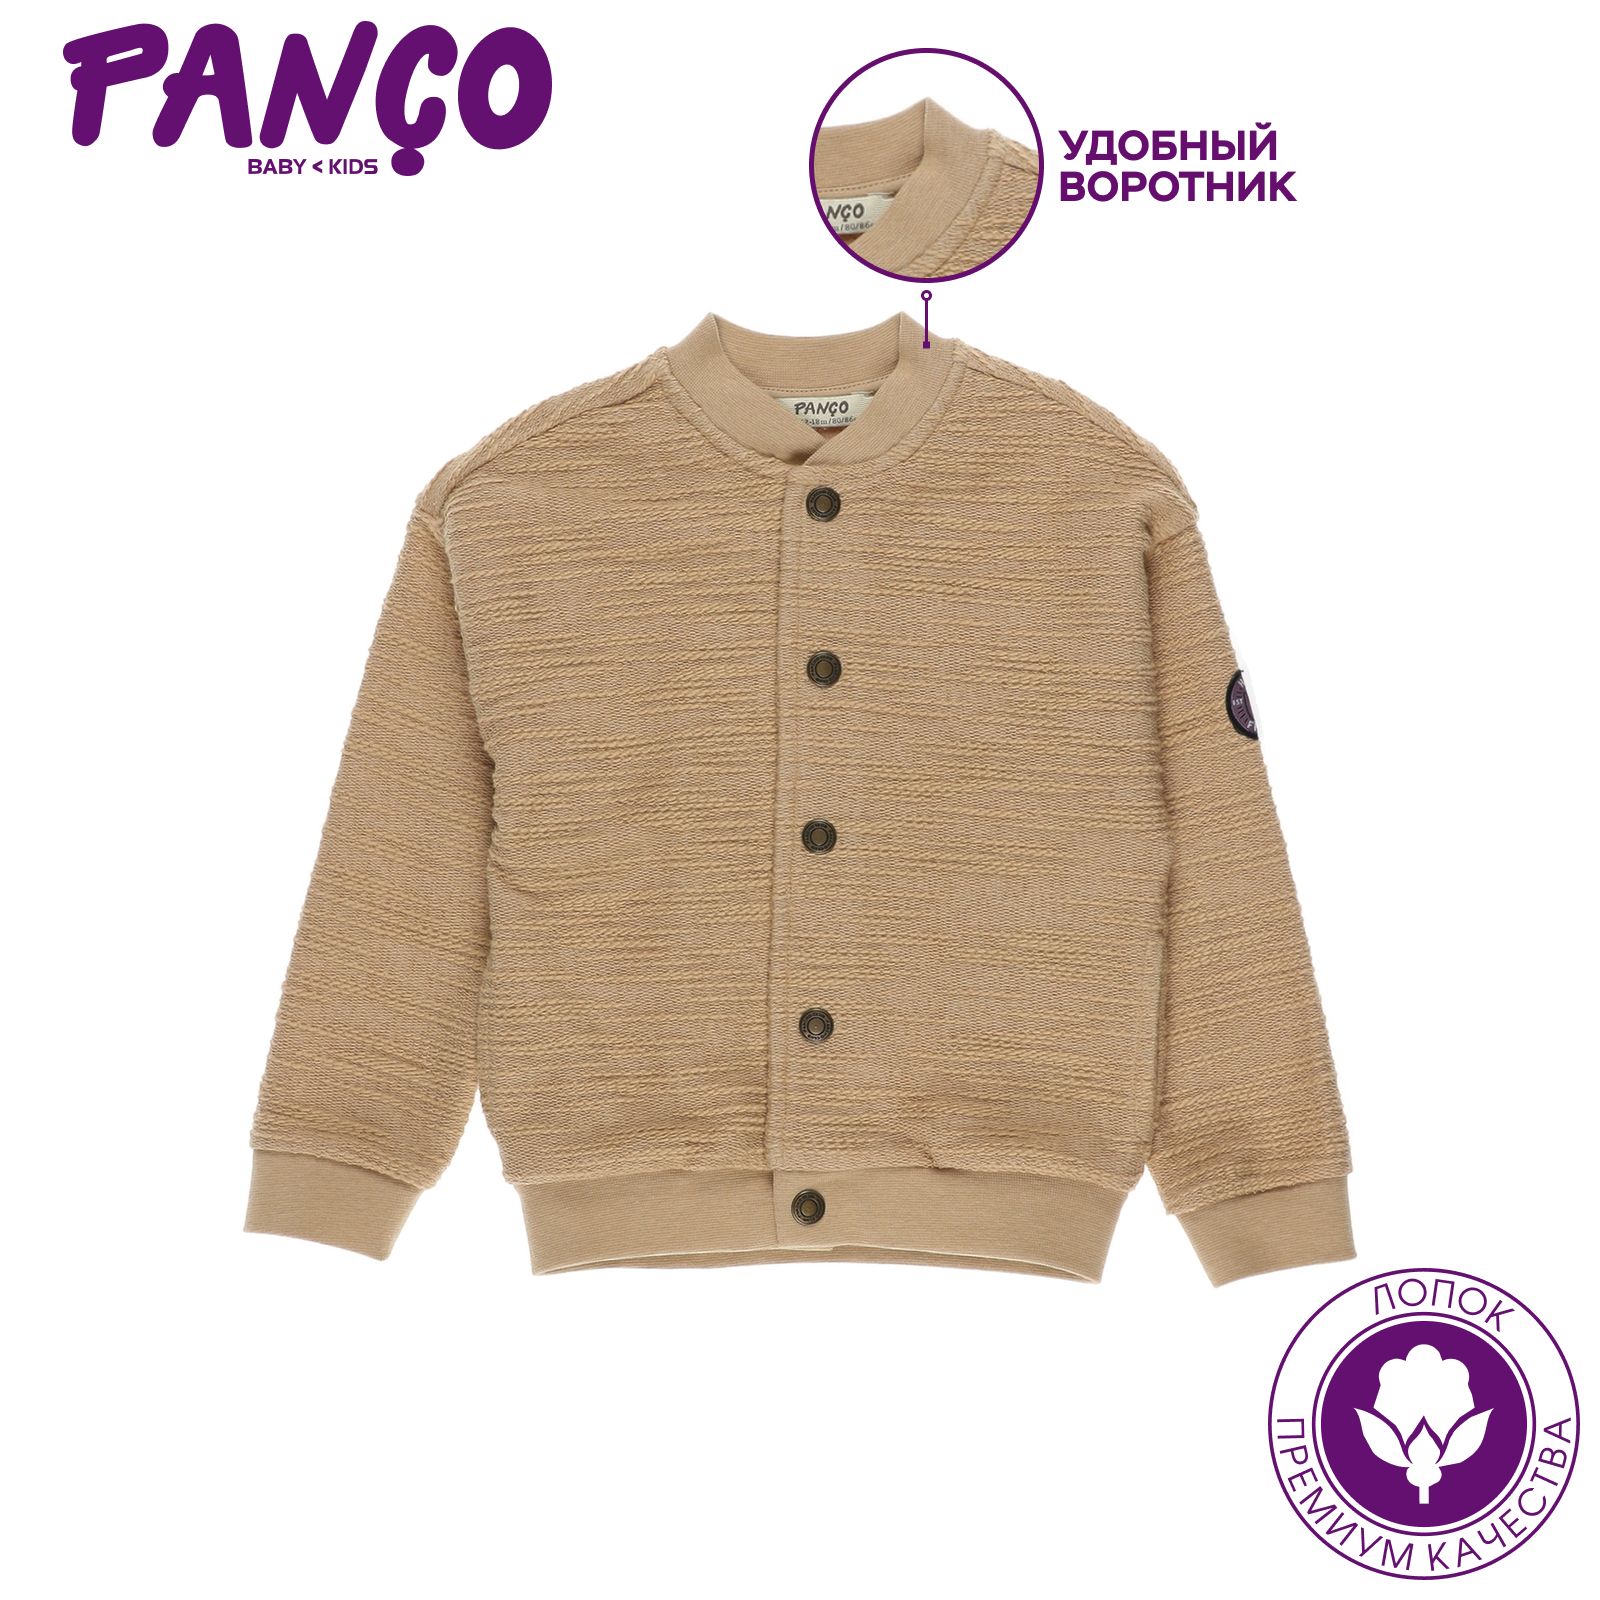 Куртка PANCO 2211BB22002/037 - фото 4